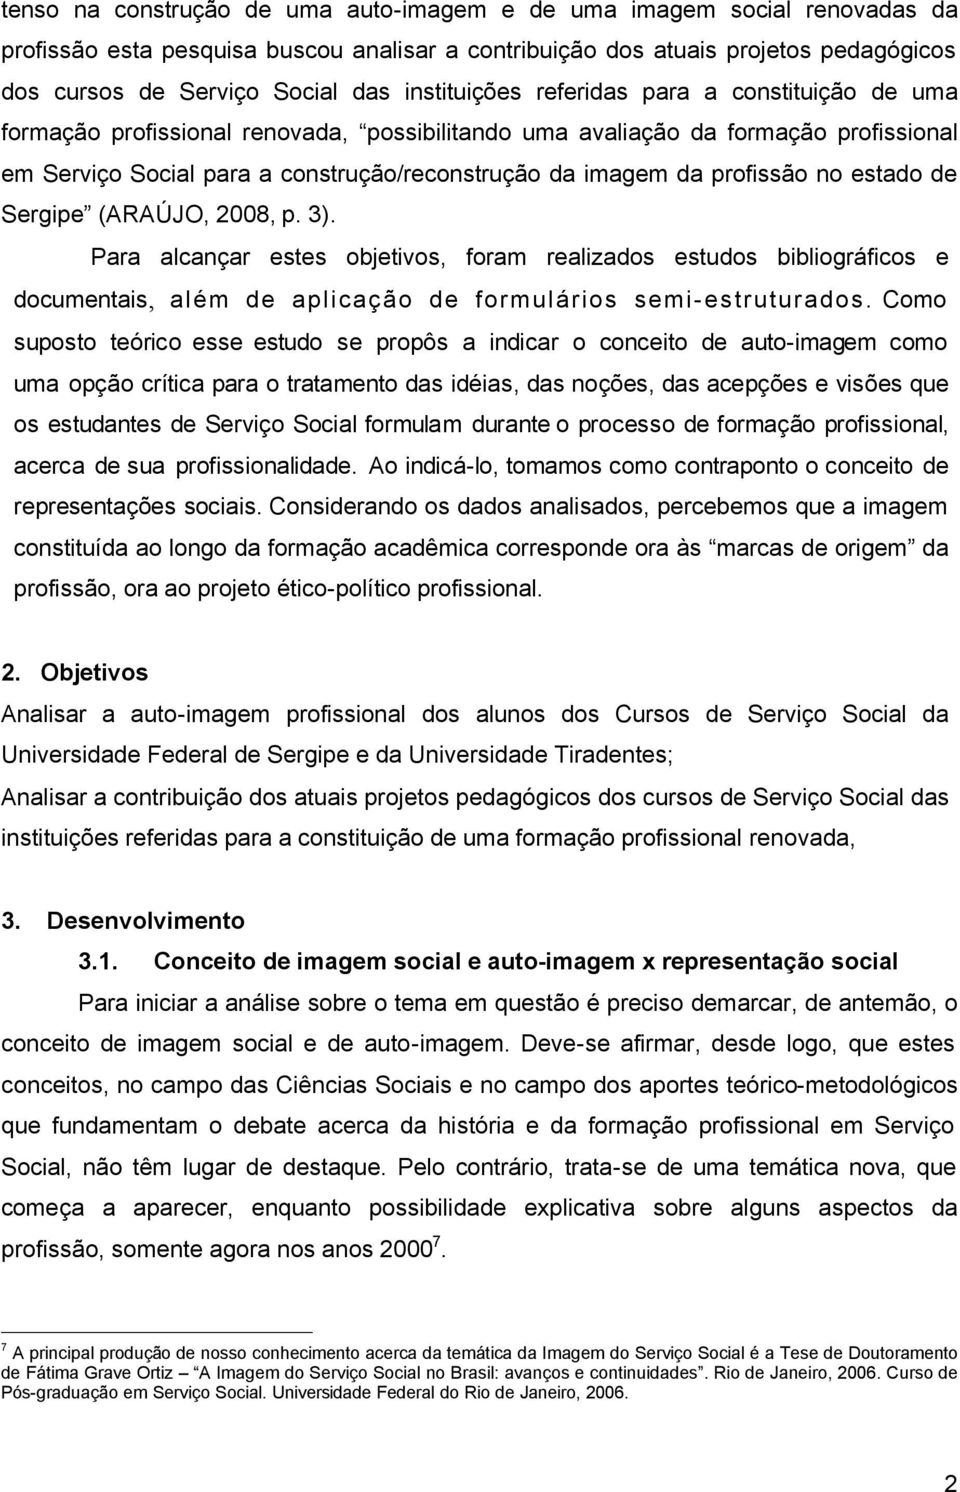 profissão no estado de Sergipe (ARAÚJO, 2008, p. 3). Para alcançar estes objetivos, foram realizados estudos bibliográficos e documentais, além de aplicação de formulários semi-estruturados.